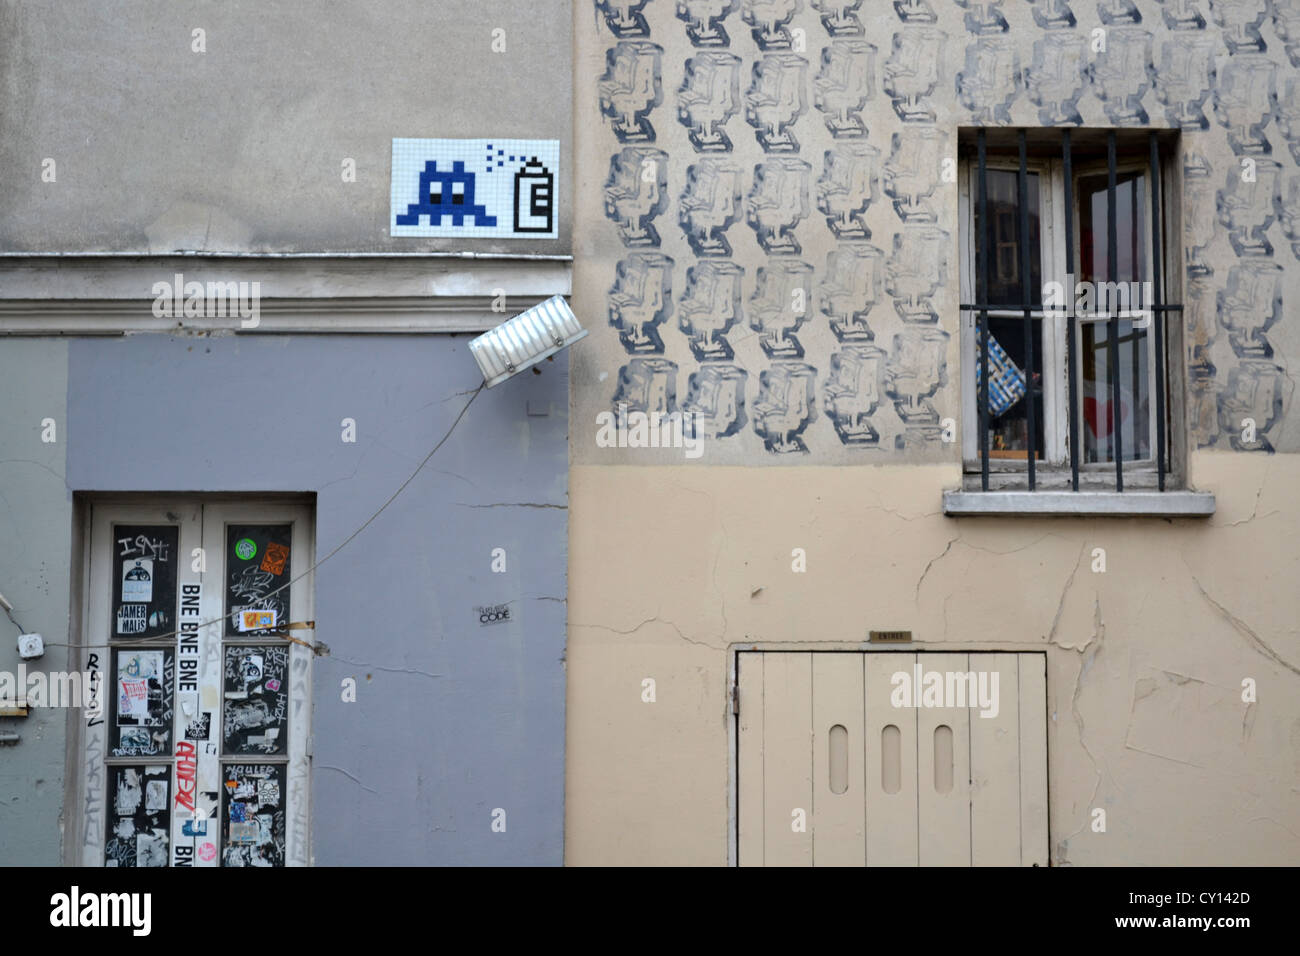 Spazio invasore graffiti e bancomat graffiti in una popolare meta turistica. Rue du Mont Cenis, dal Sacre Coeur, Parigi, Francia. Foto Stock